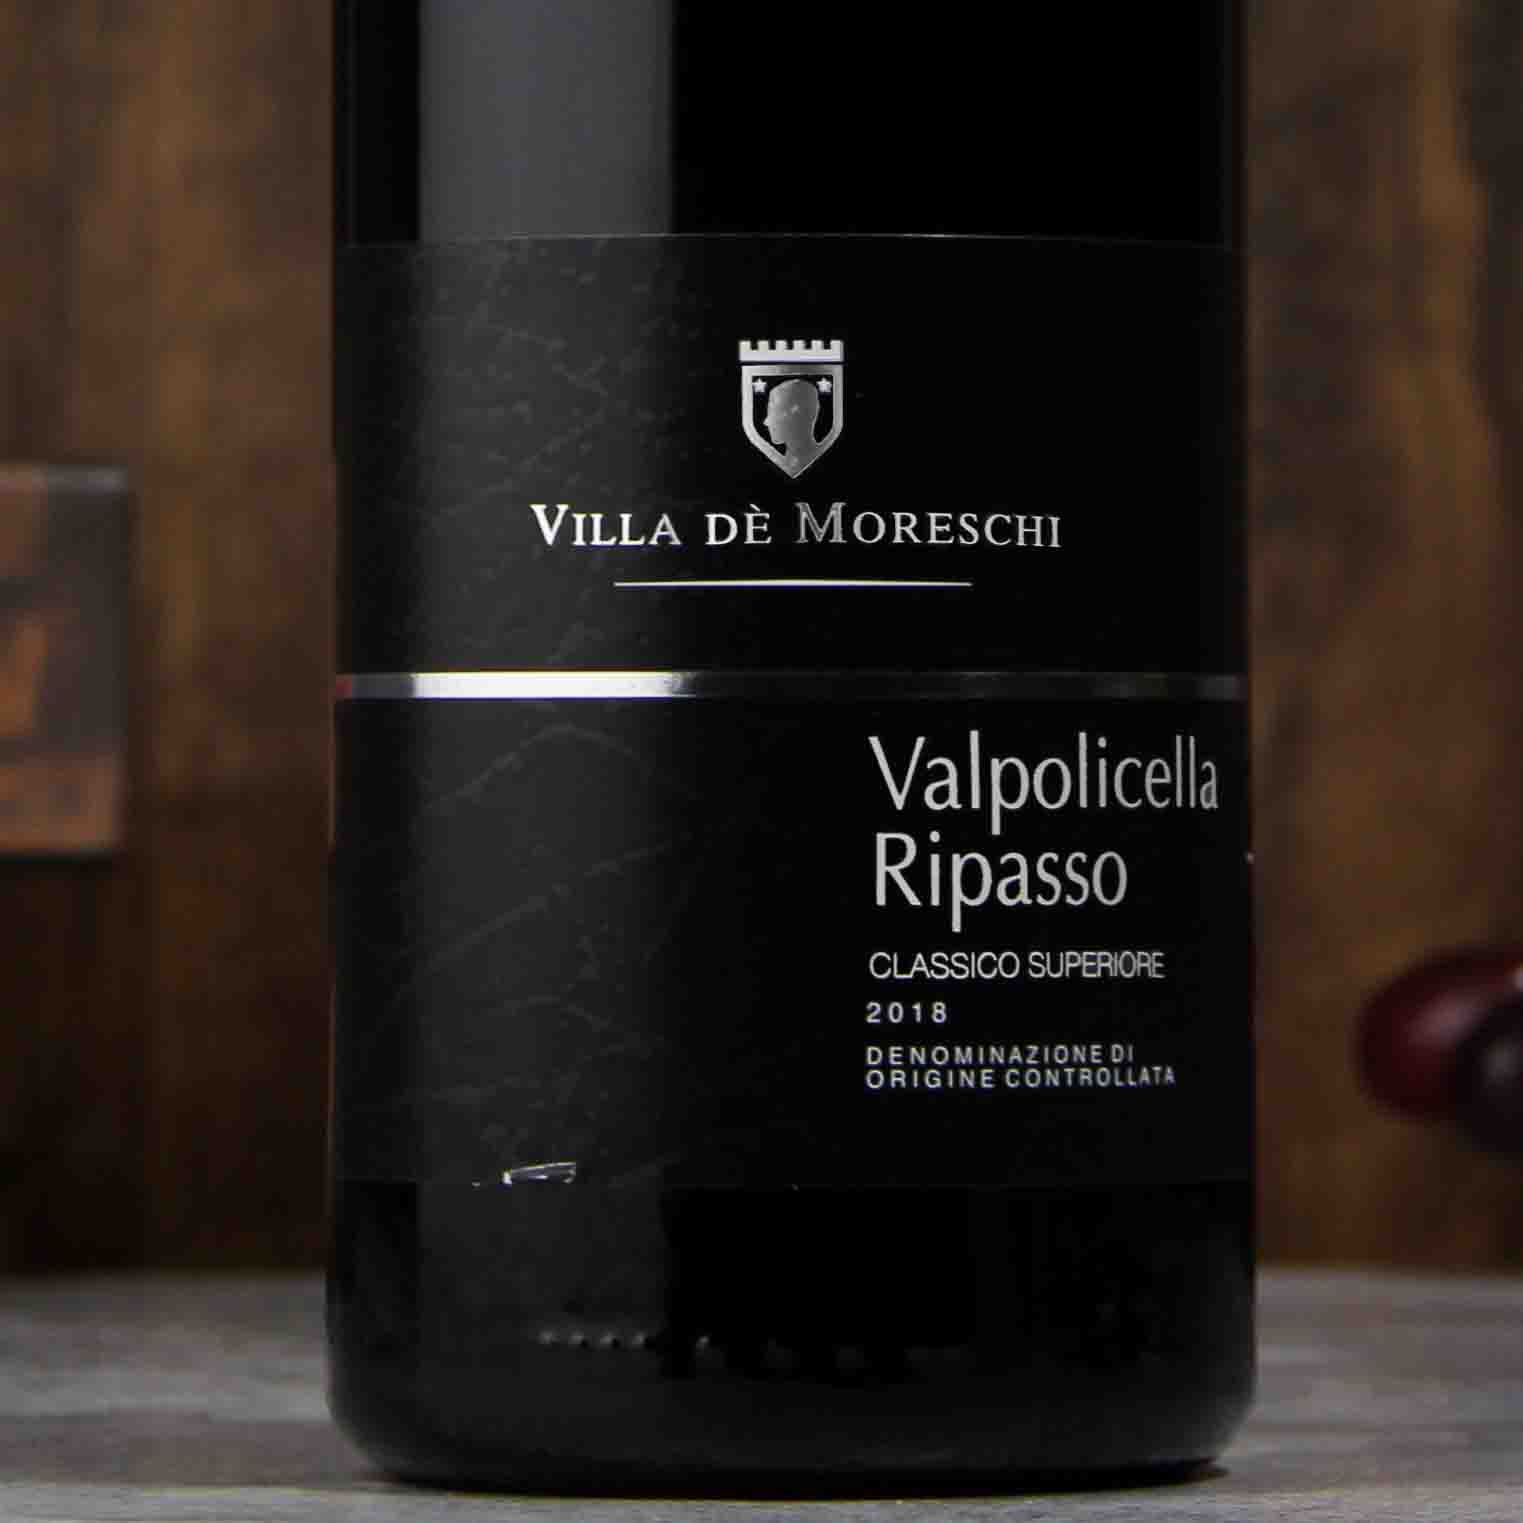 意大利莫里斯基里帕索干红葡萄酒2018